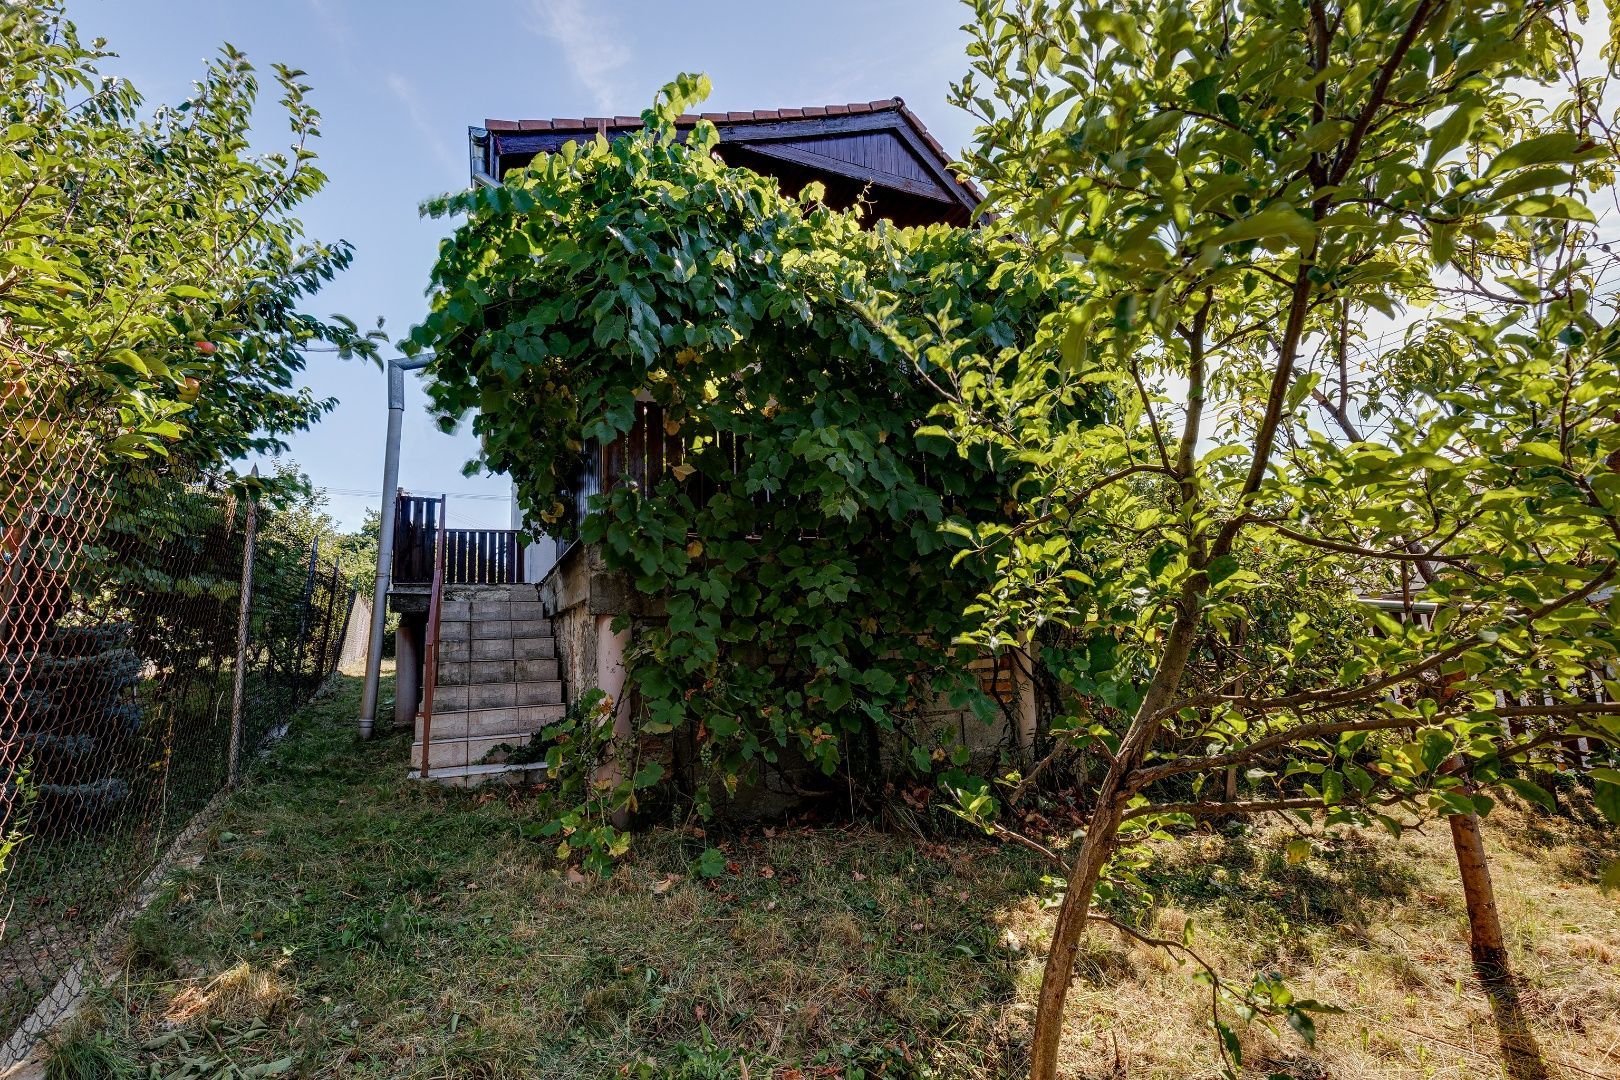 PREDAJ - Rekreačný dom s možnosťou celoročného bývania v lokalite Stupava, okres Malacky, konkrétne v záhradkárskej osade Lintávy